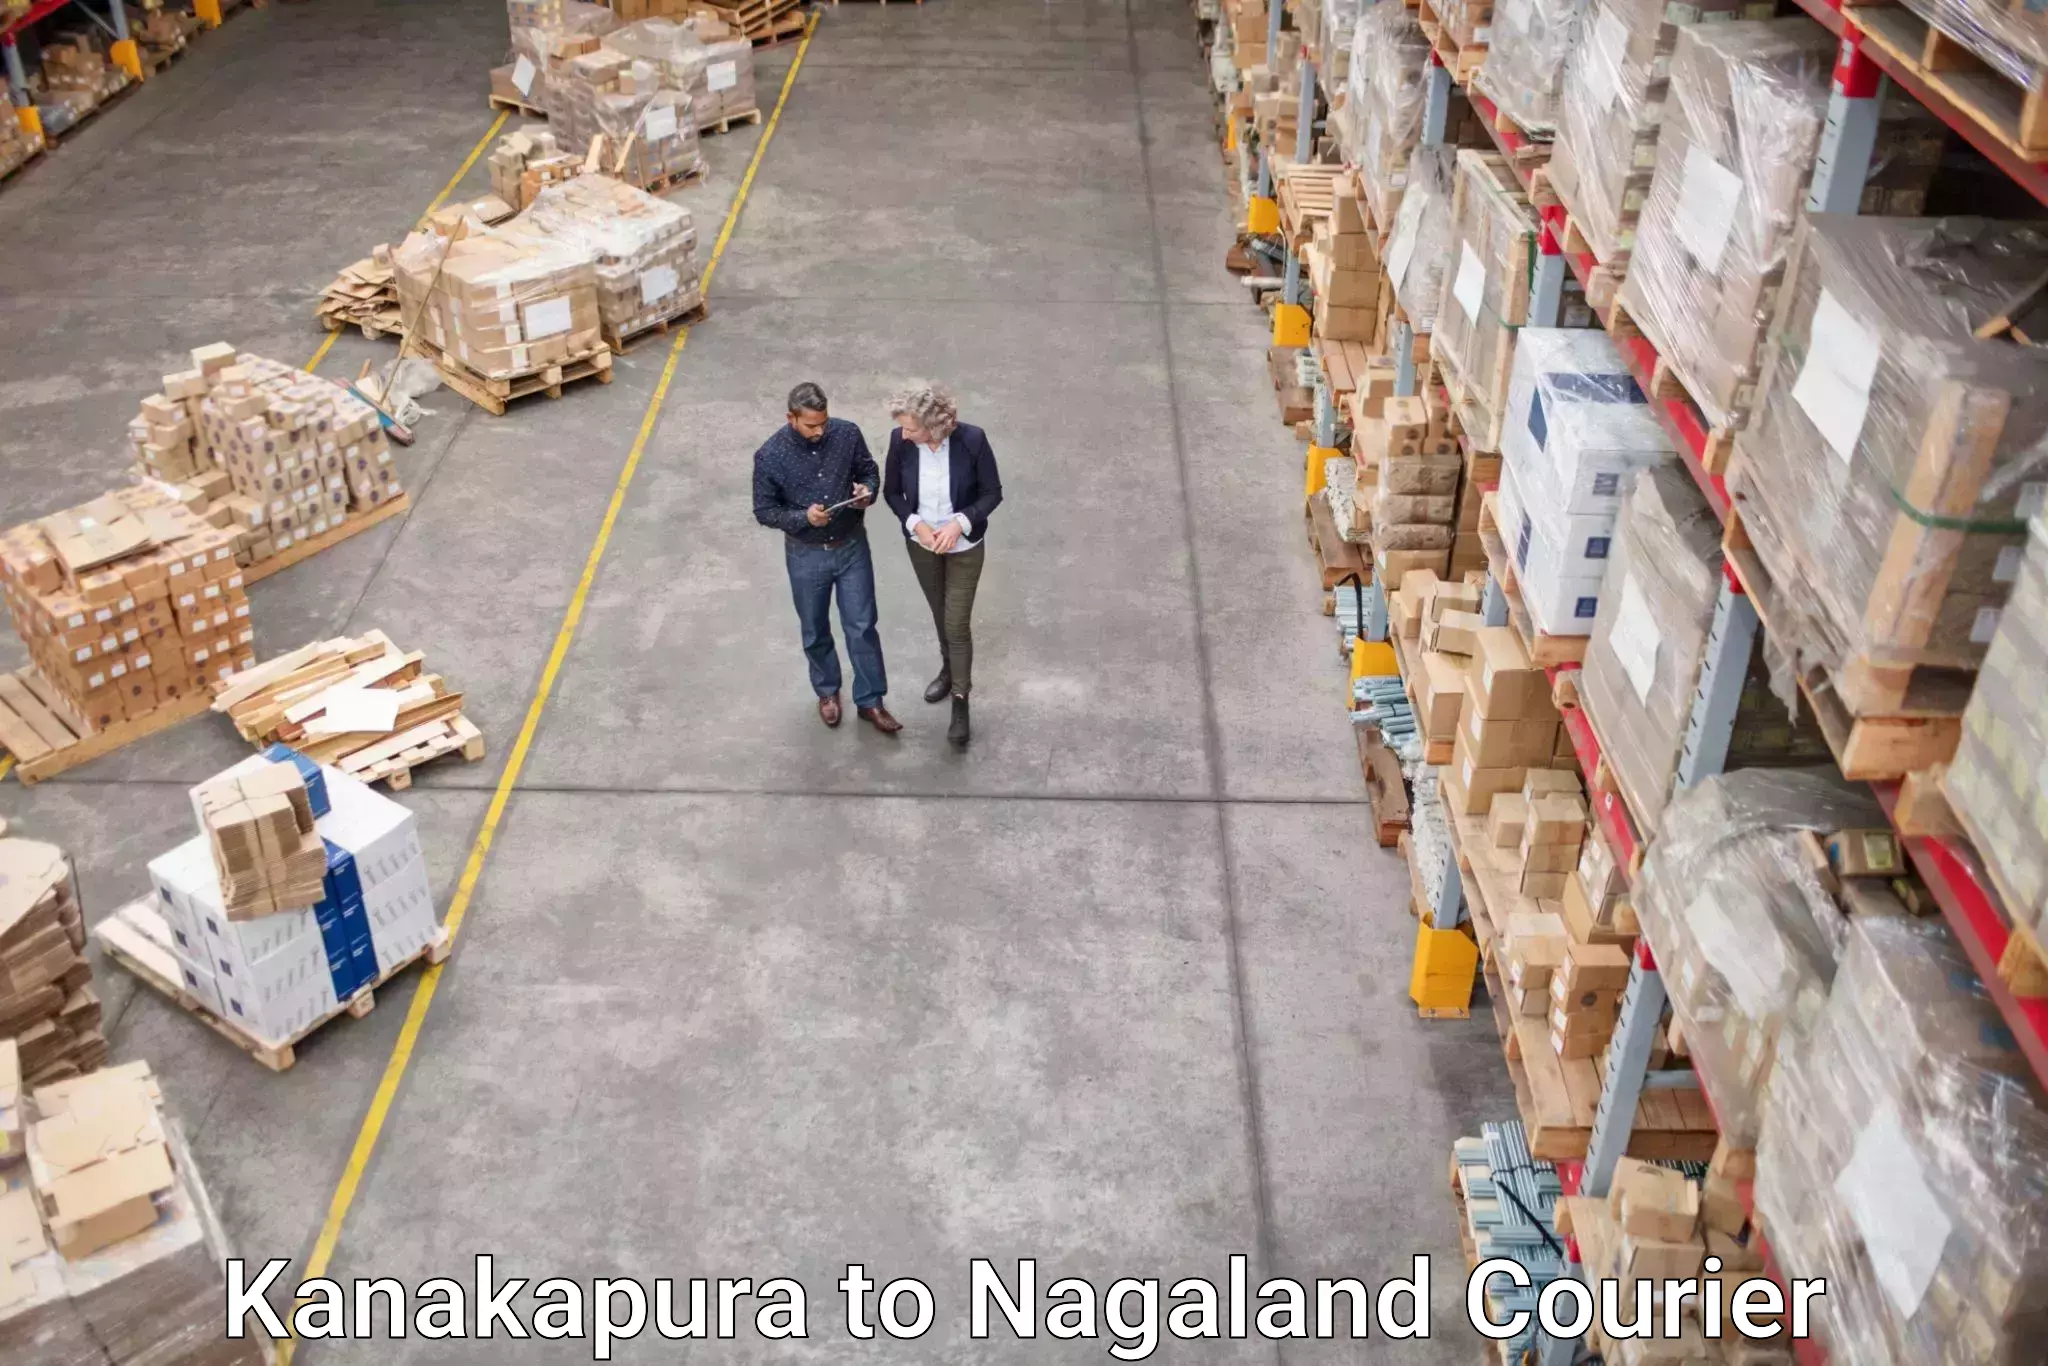 Next-generation courier services Kanakapura to Longleng